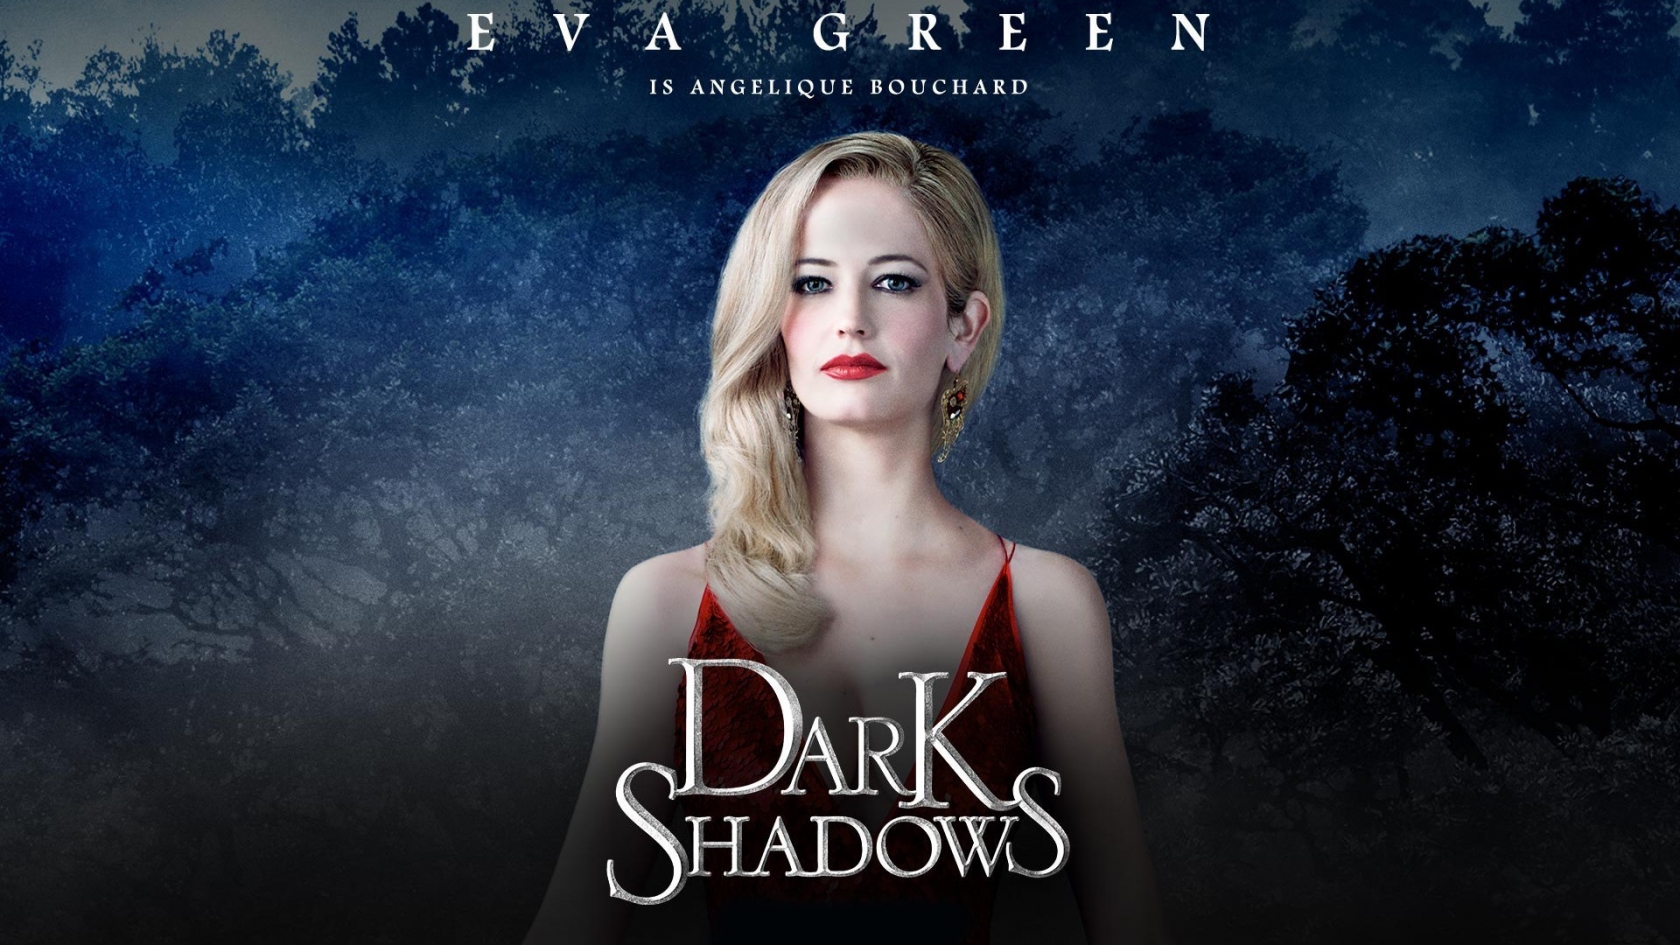 Dark Shadows Eva Green for 1680 x 945 HDTV resolution